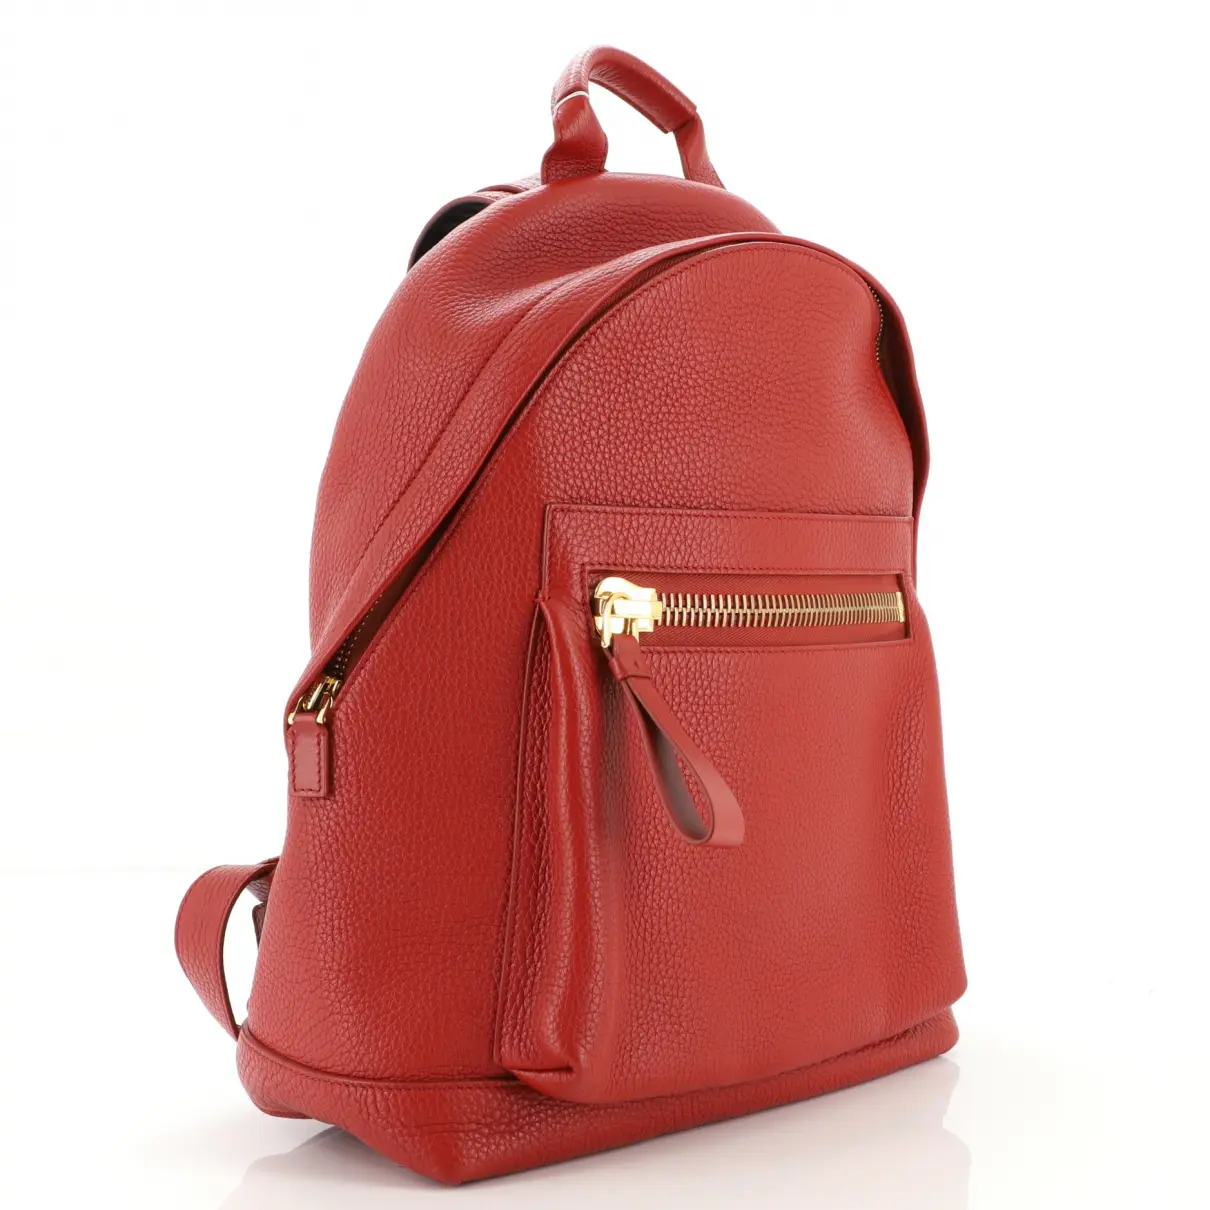 Buy Tom Ford Leather handbag online